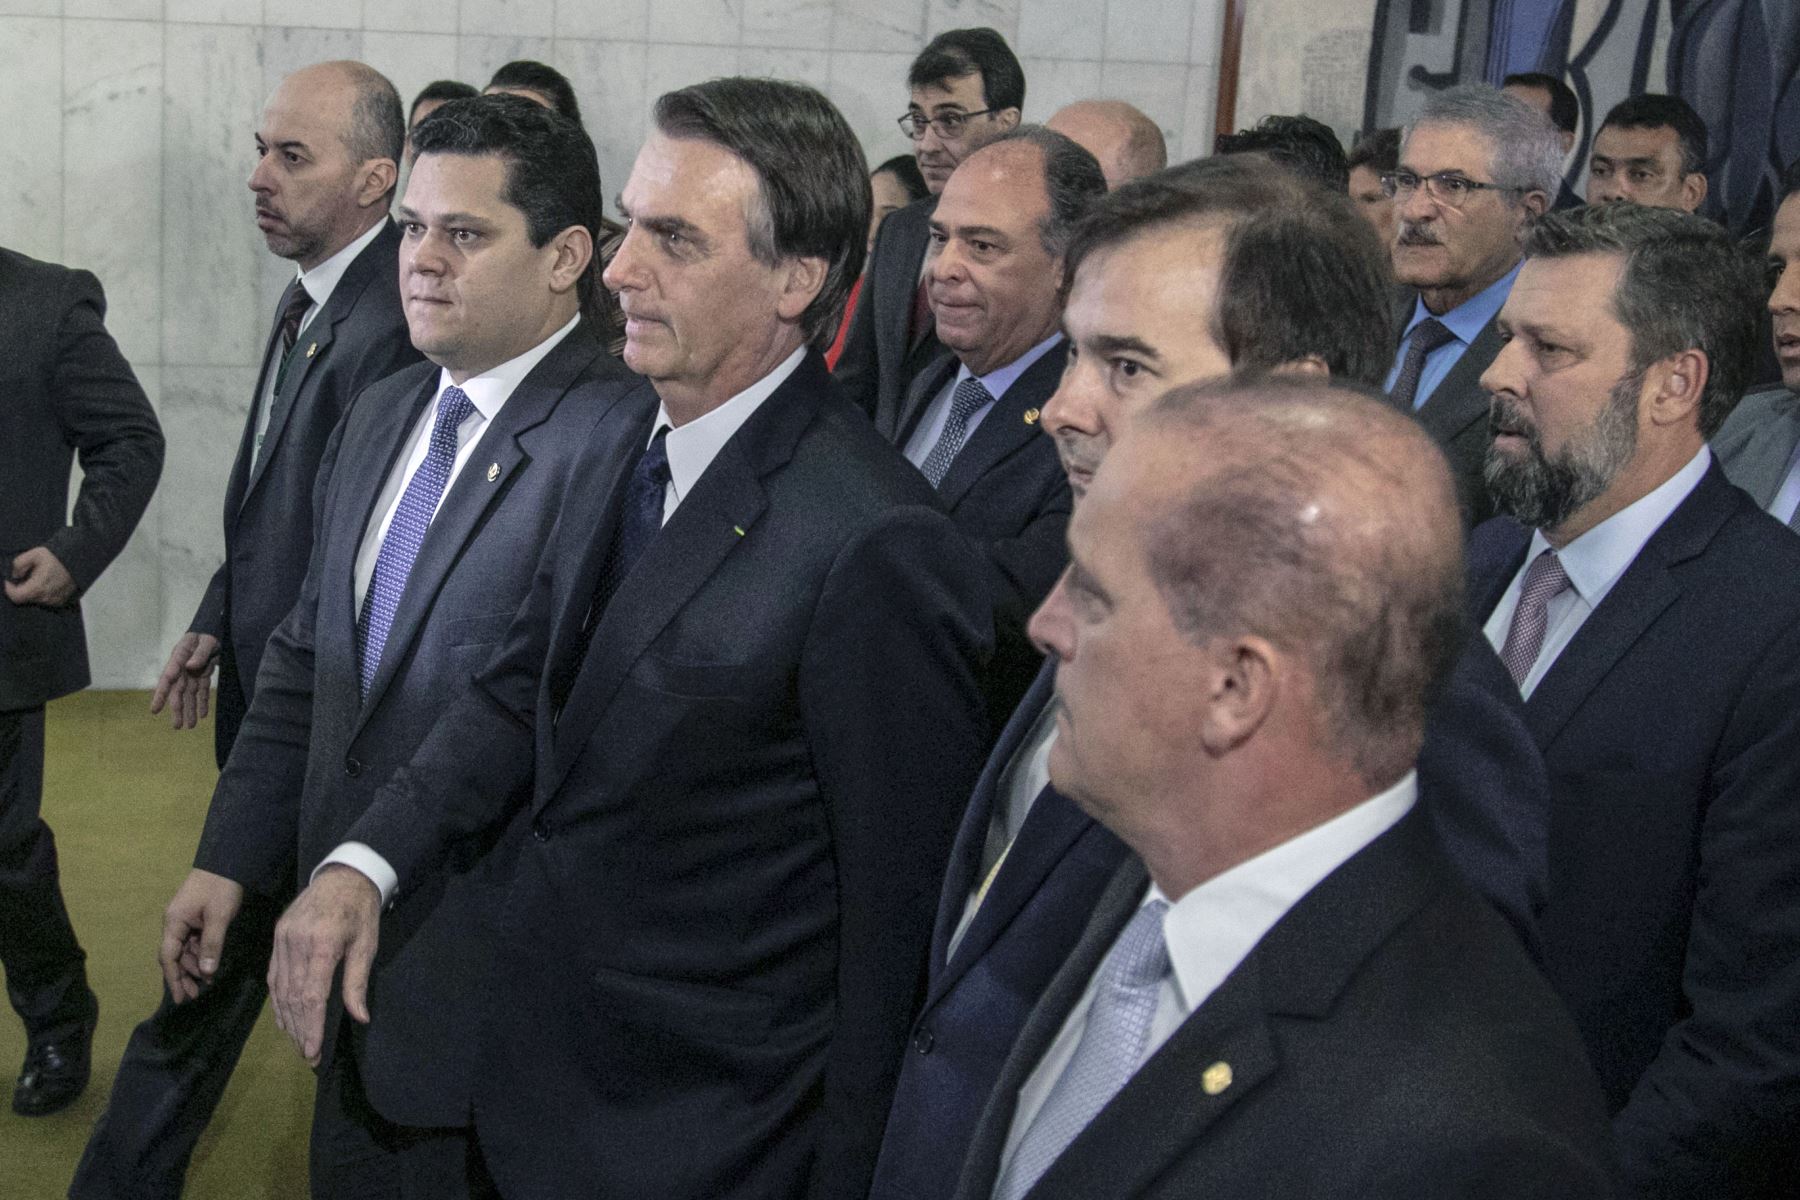 El presidente de Brasil, Jair Bolsonaro, al centro, acompañado por miembros de su gobierno, llega al Congreso Nacional en Brasilia. Foto: AFP